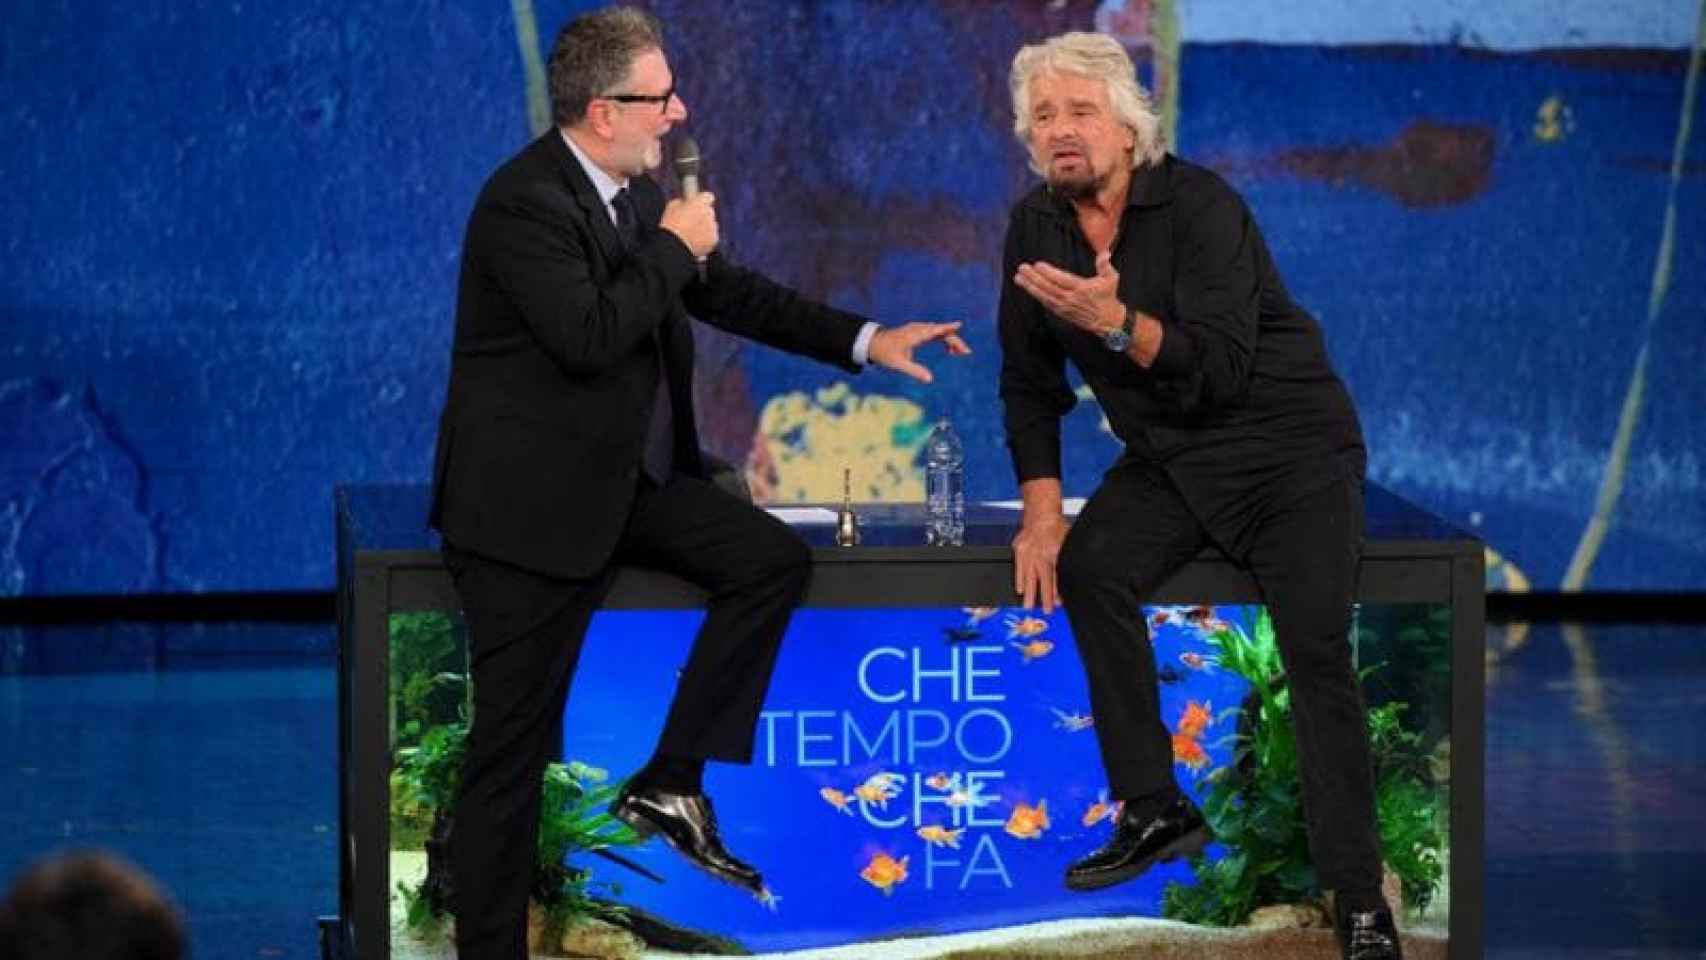 Fabio Fazio y Beppe Grillo en 'Che tempo che fa'.